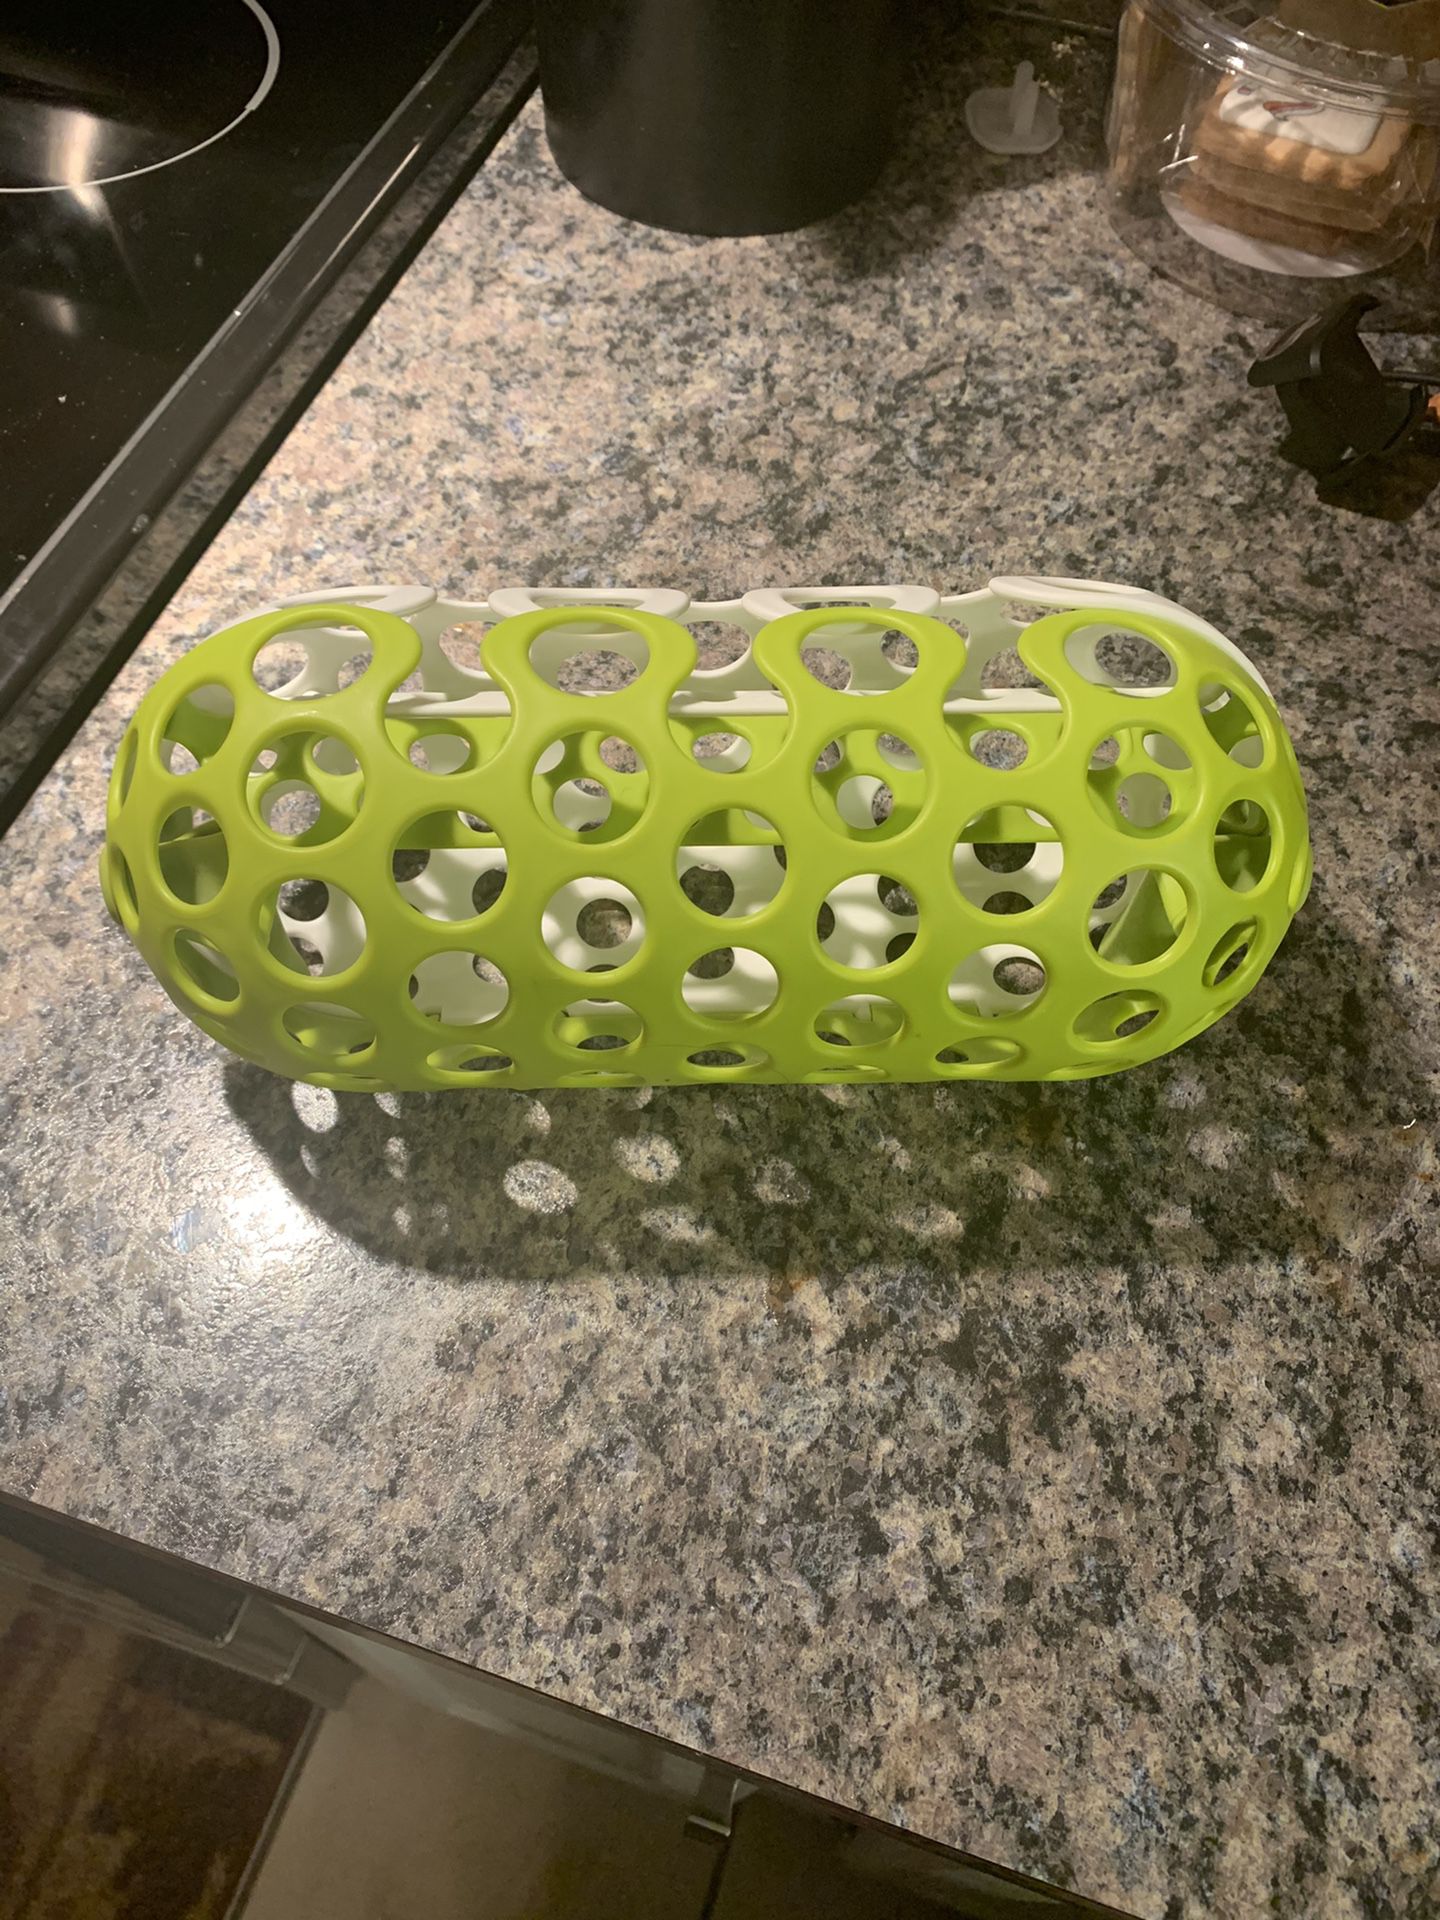 Infant dishwasher basket